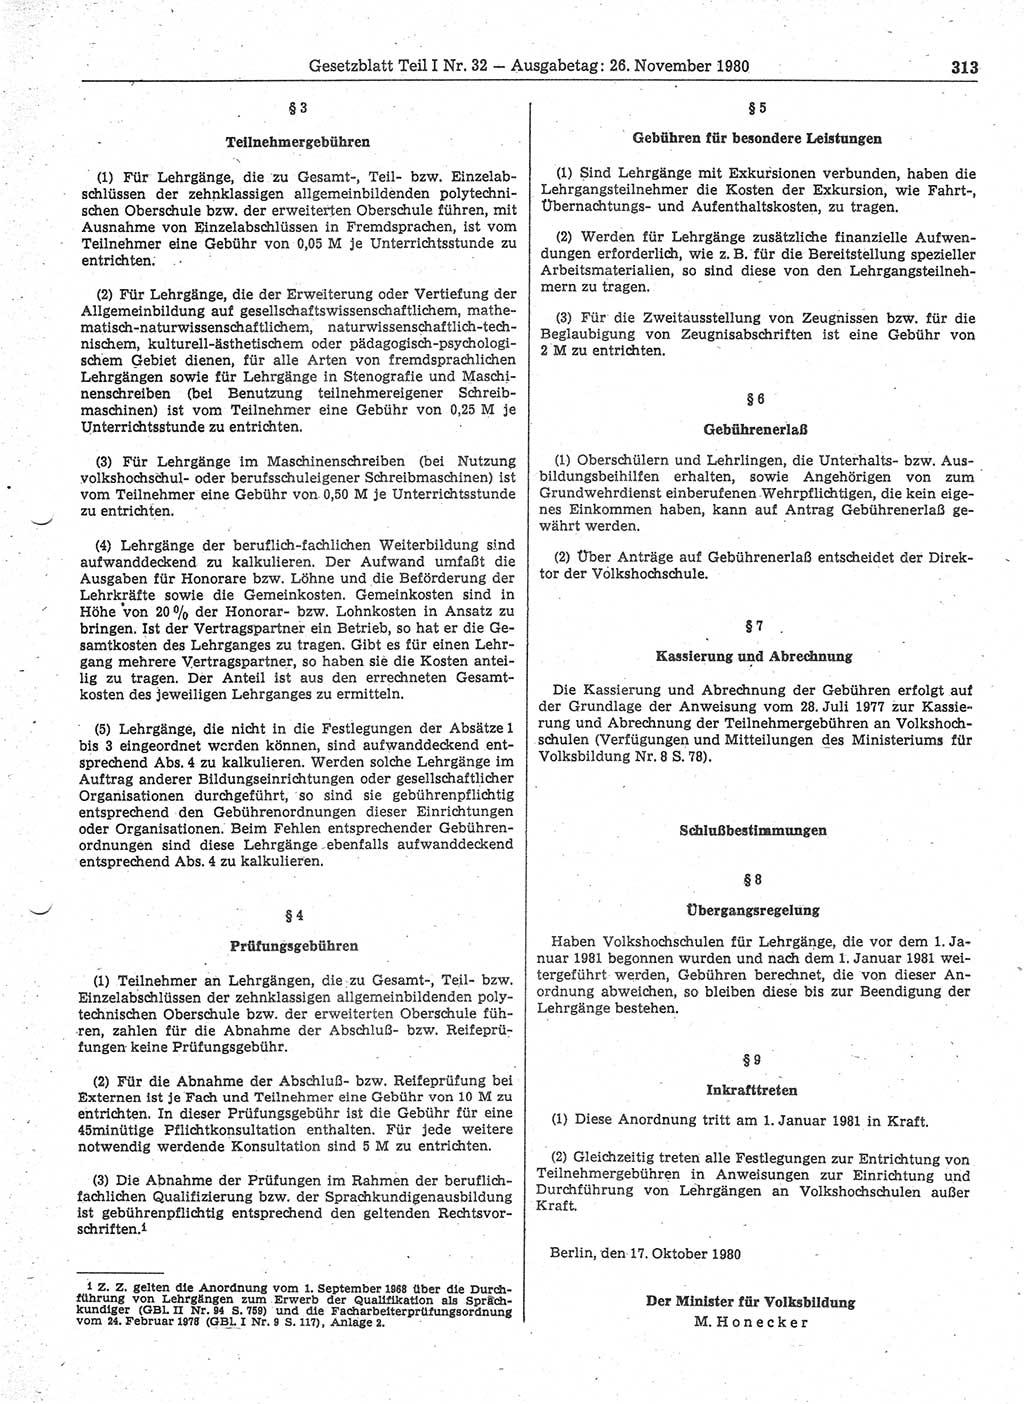 Gesetzblatt (GBl.) der Deutschen Demokratischen Republik (DDR) Teil Ⅰ 1980, Seite 313 (GBl. DDR Ⅰ 1980, S. 313)